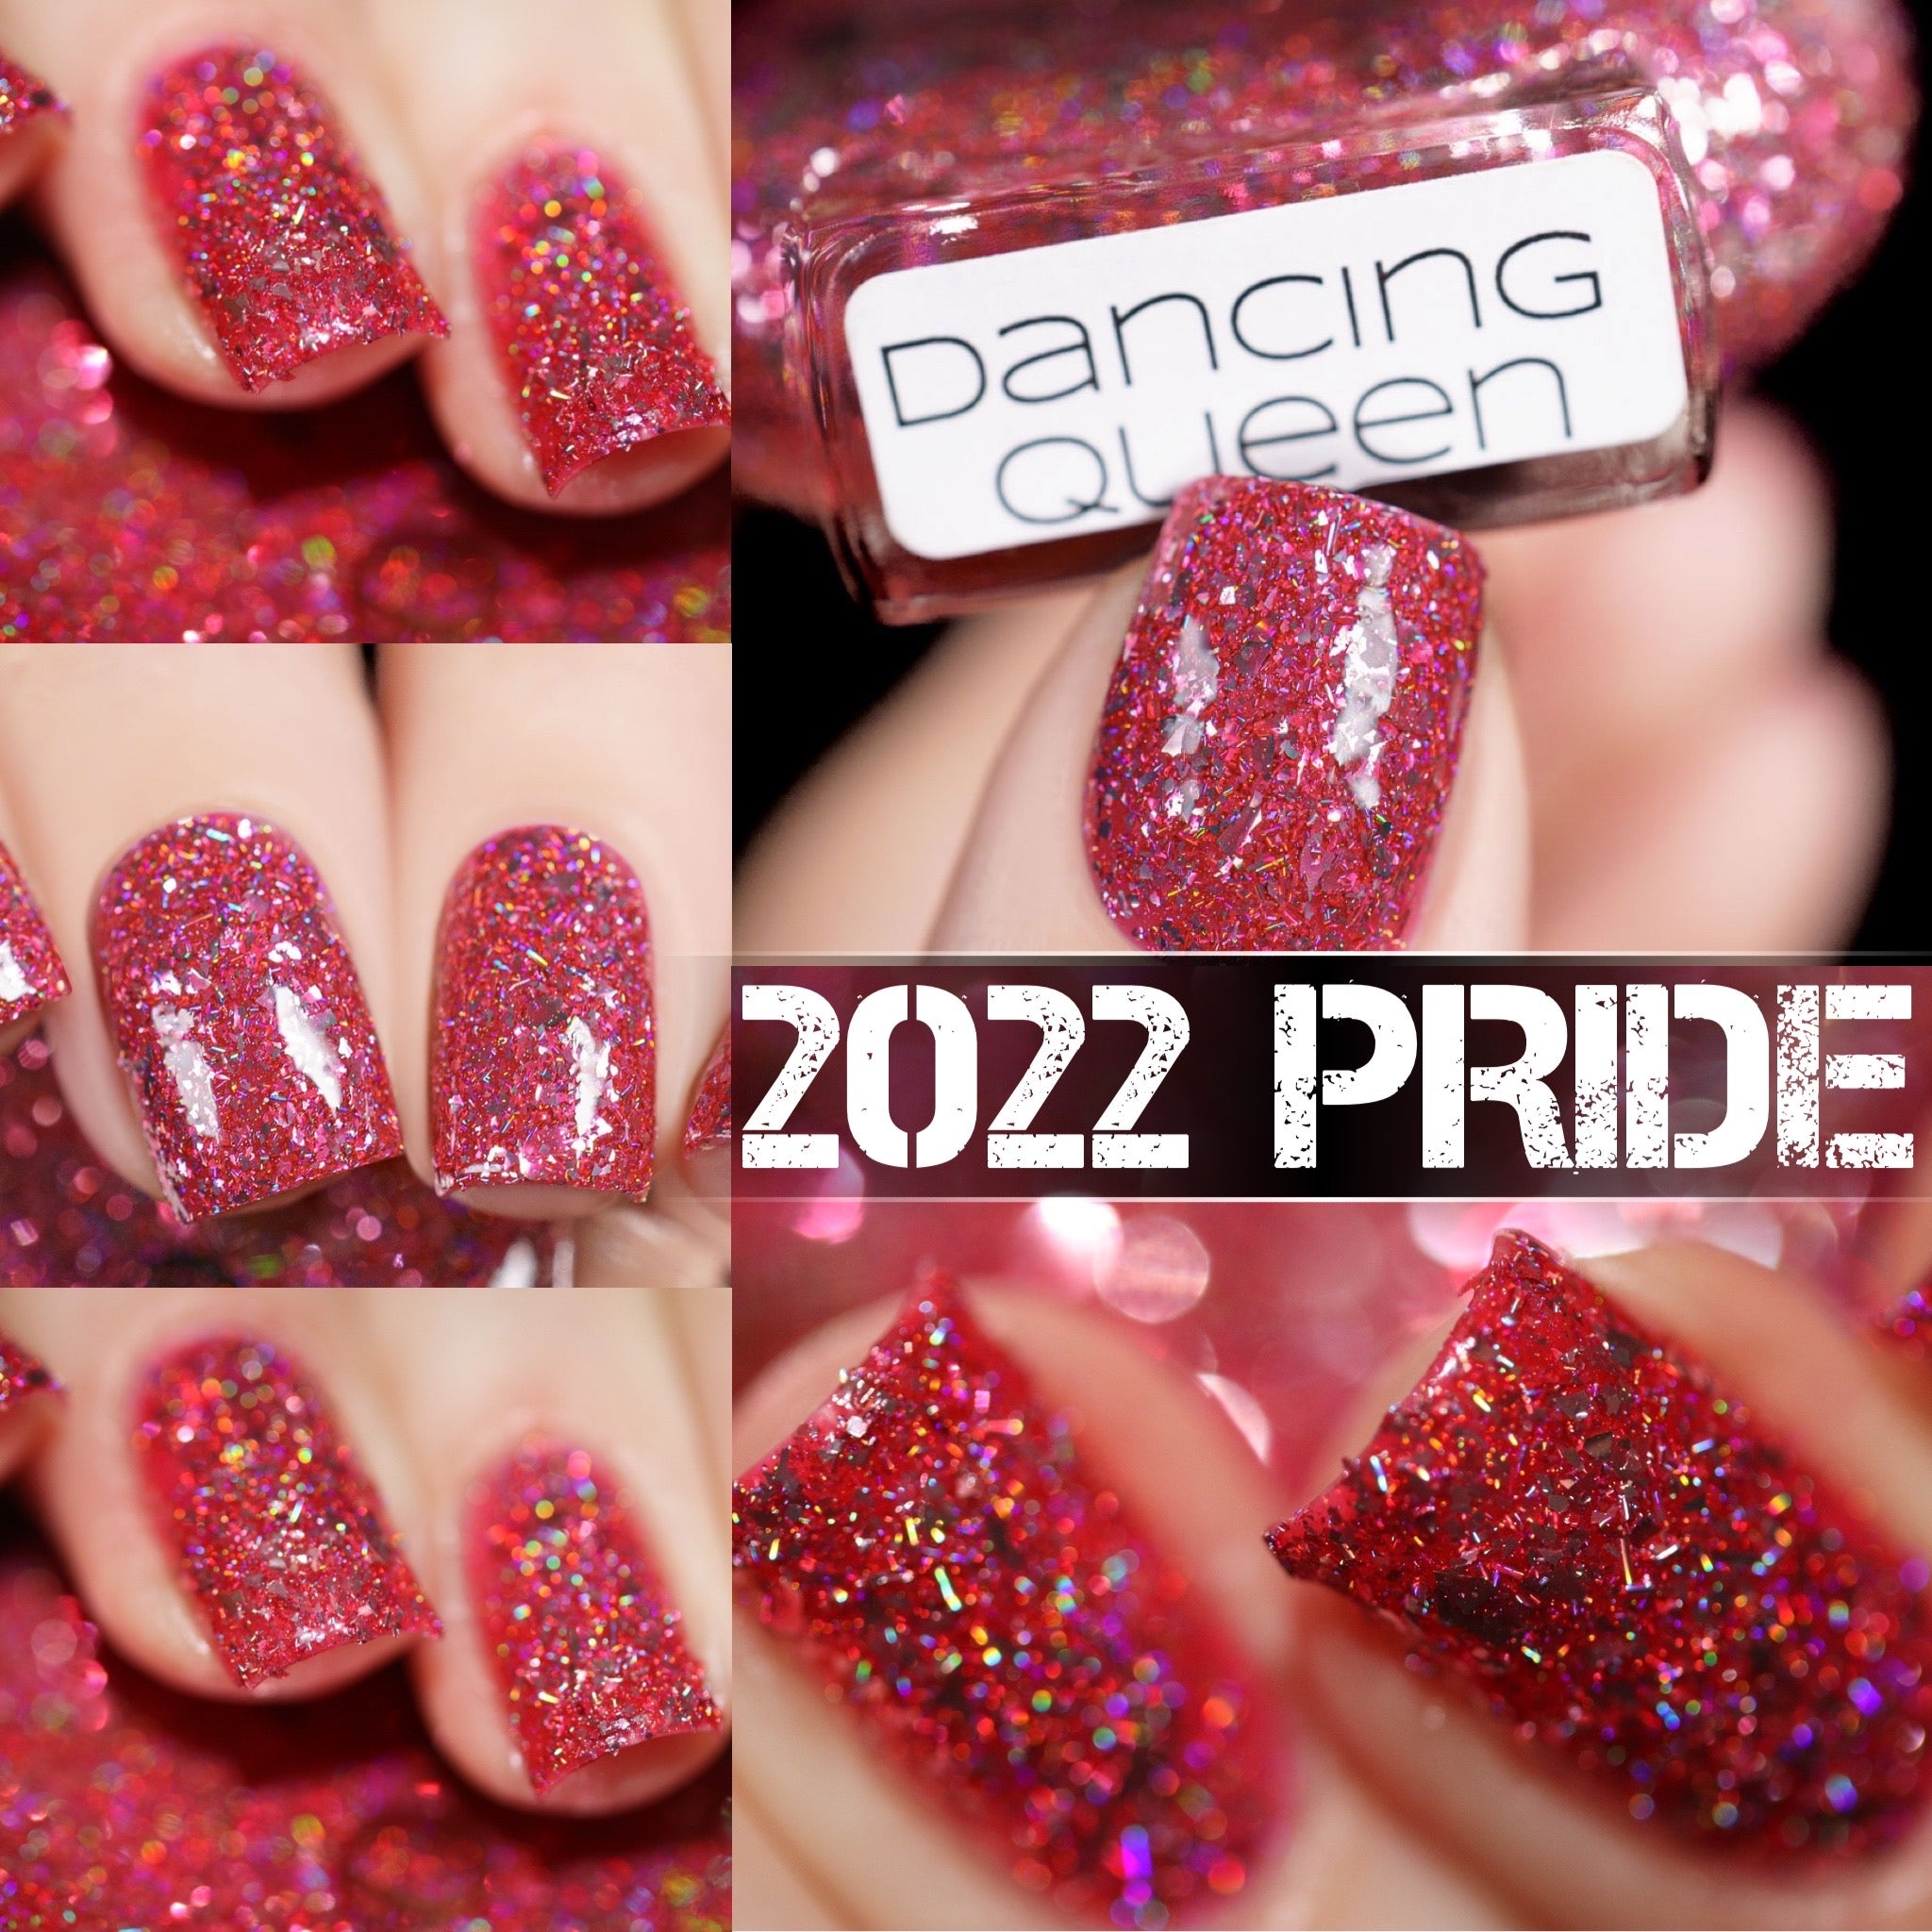 Pride 2022 - Dancing Queen